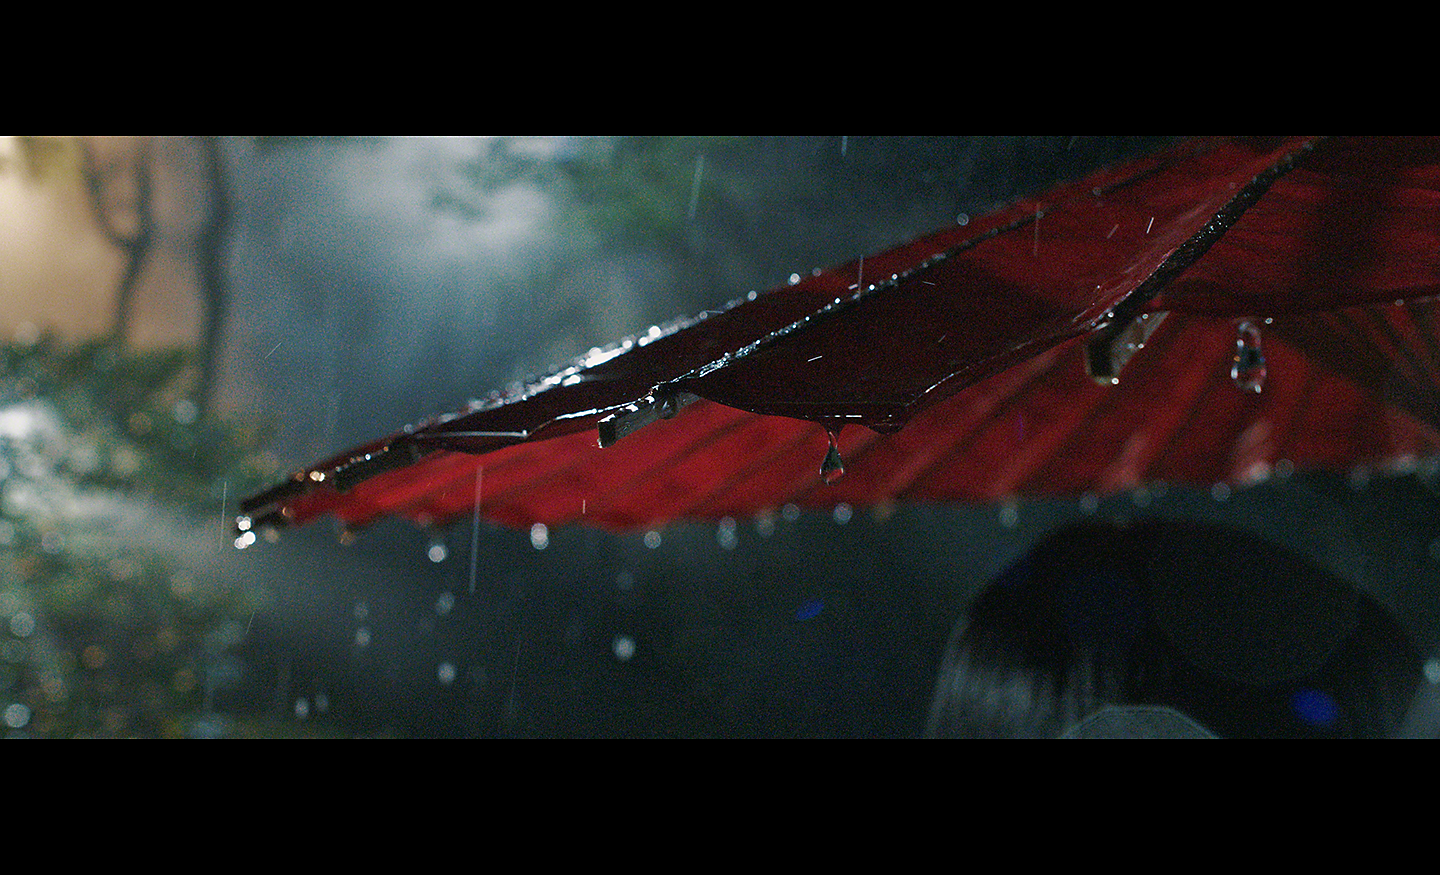 Bild von einem roten Sonnenschirm im schwachen Licht, von dem der Regen tropft